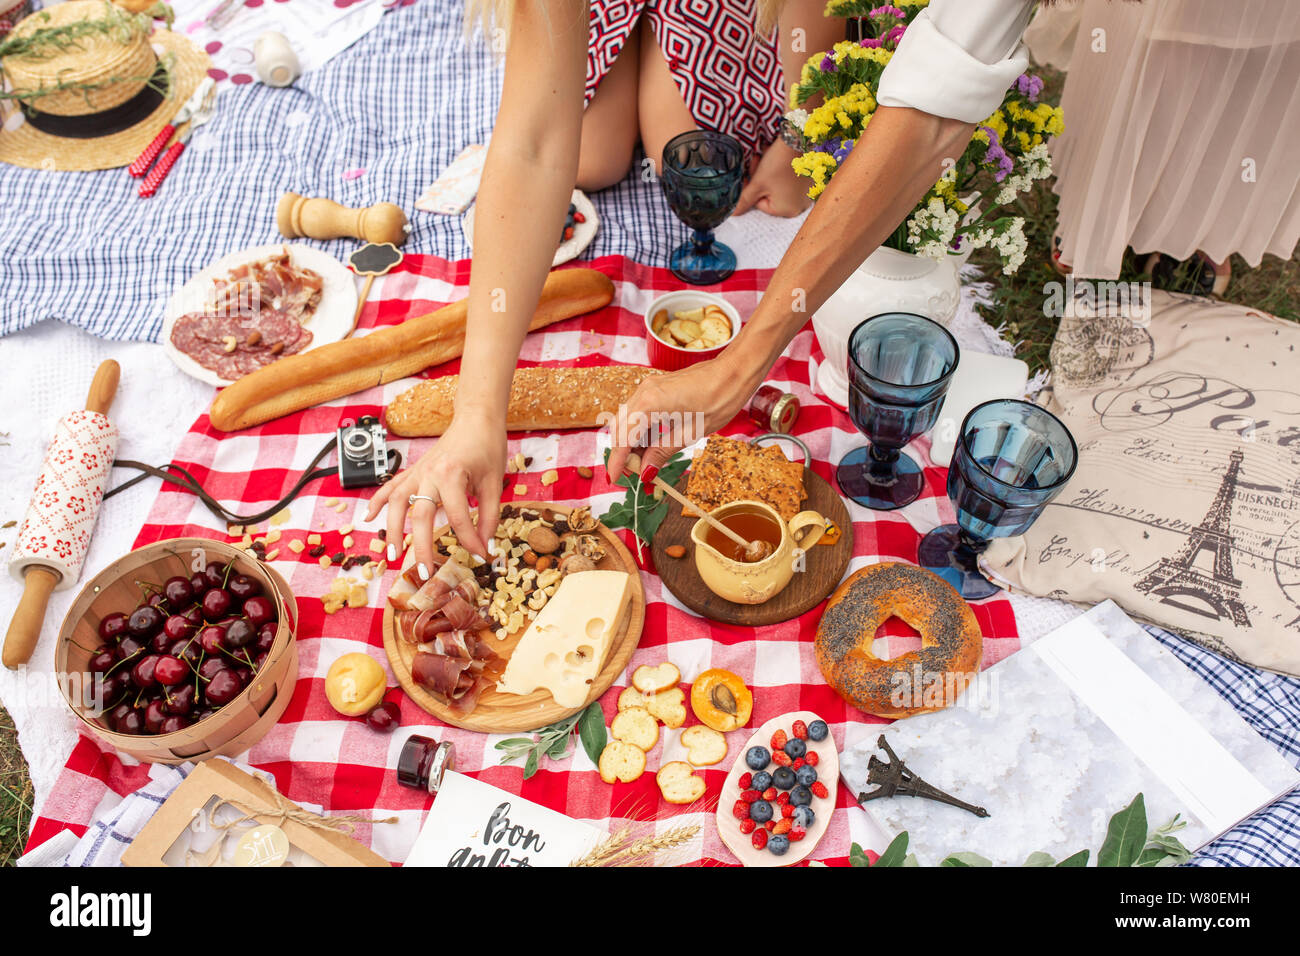 A scacchi in coperta picnic in stile francese con cibi e segno dice bon  appetit Foto stock - Alamy